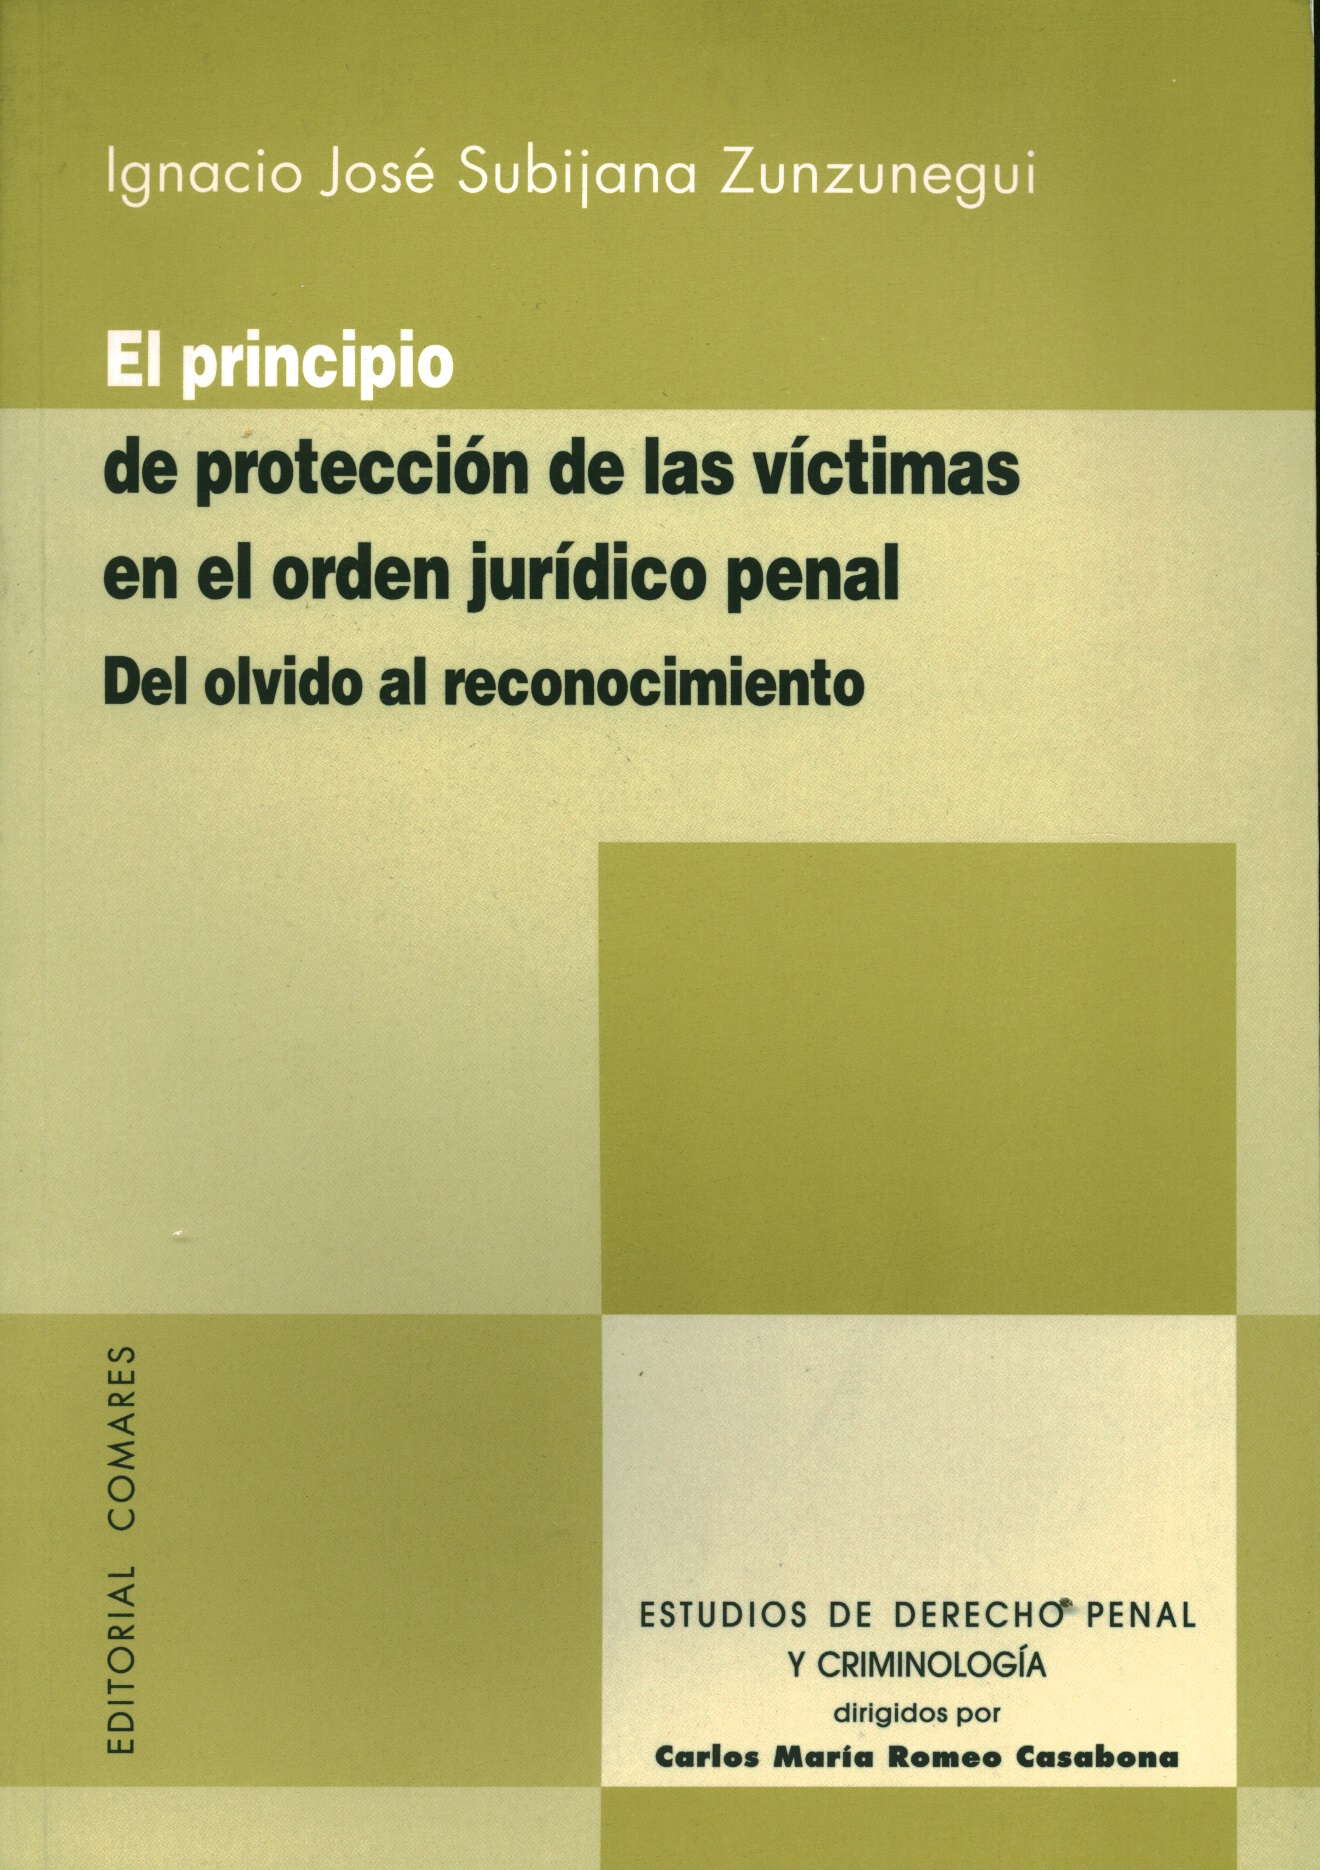 El principio de protección de las víctimas en el orden jurídico penal. El olvido al reconocimiento